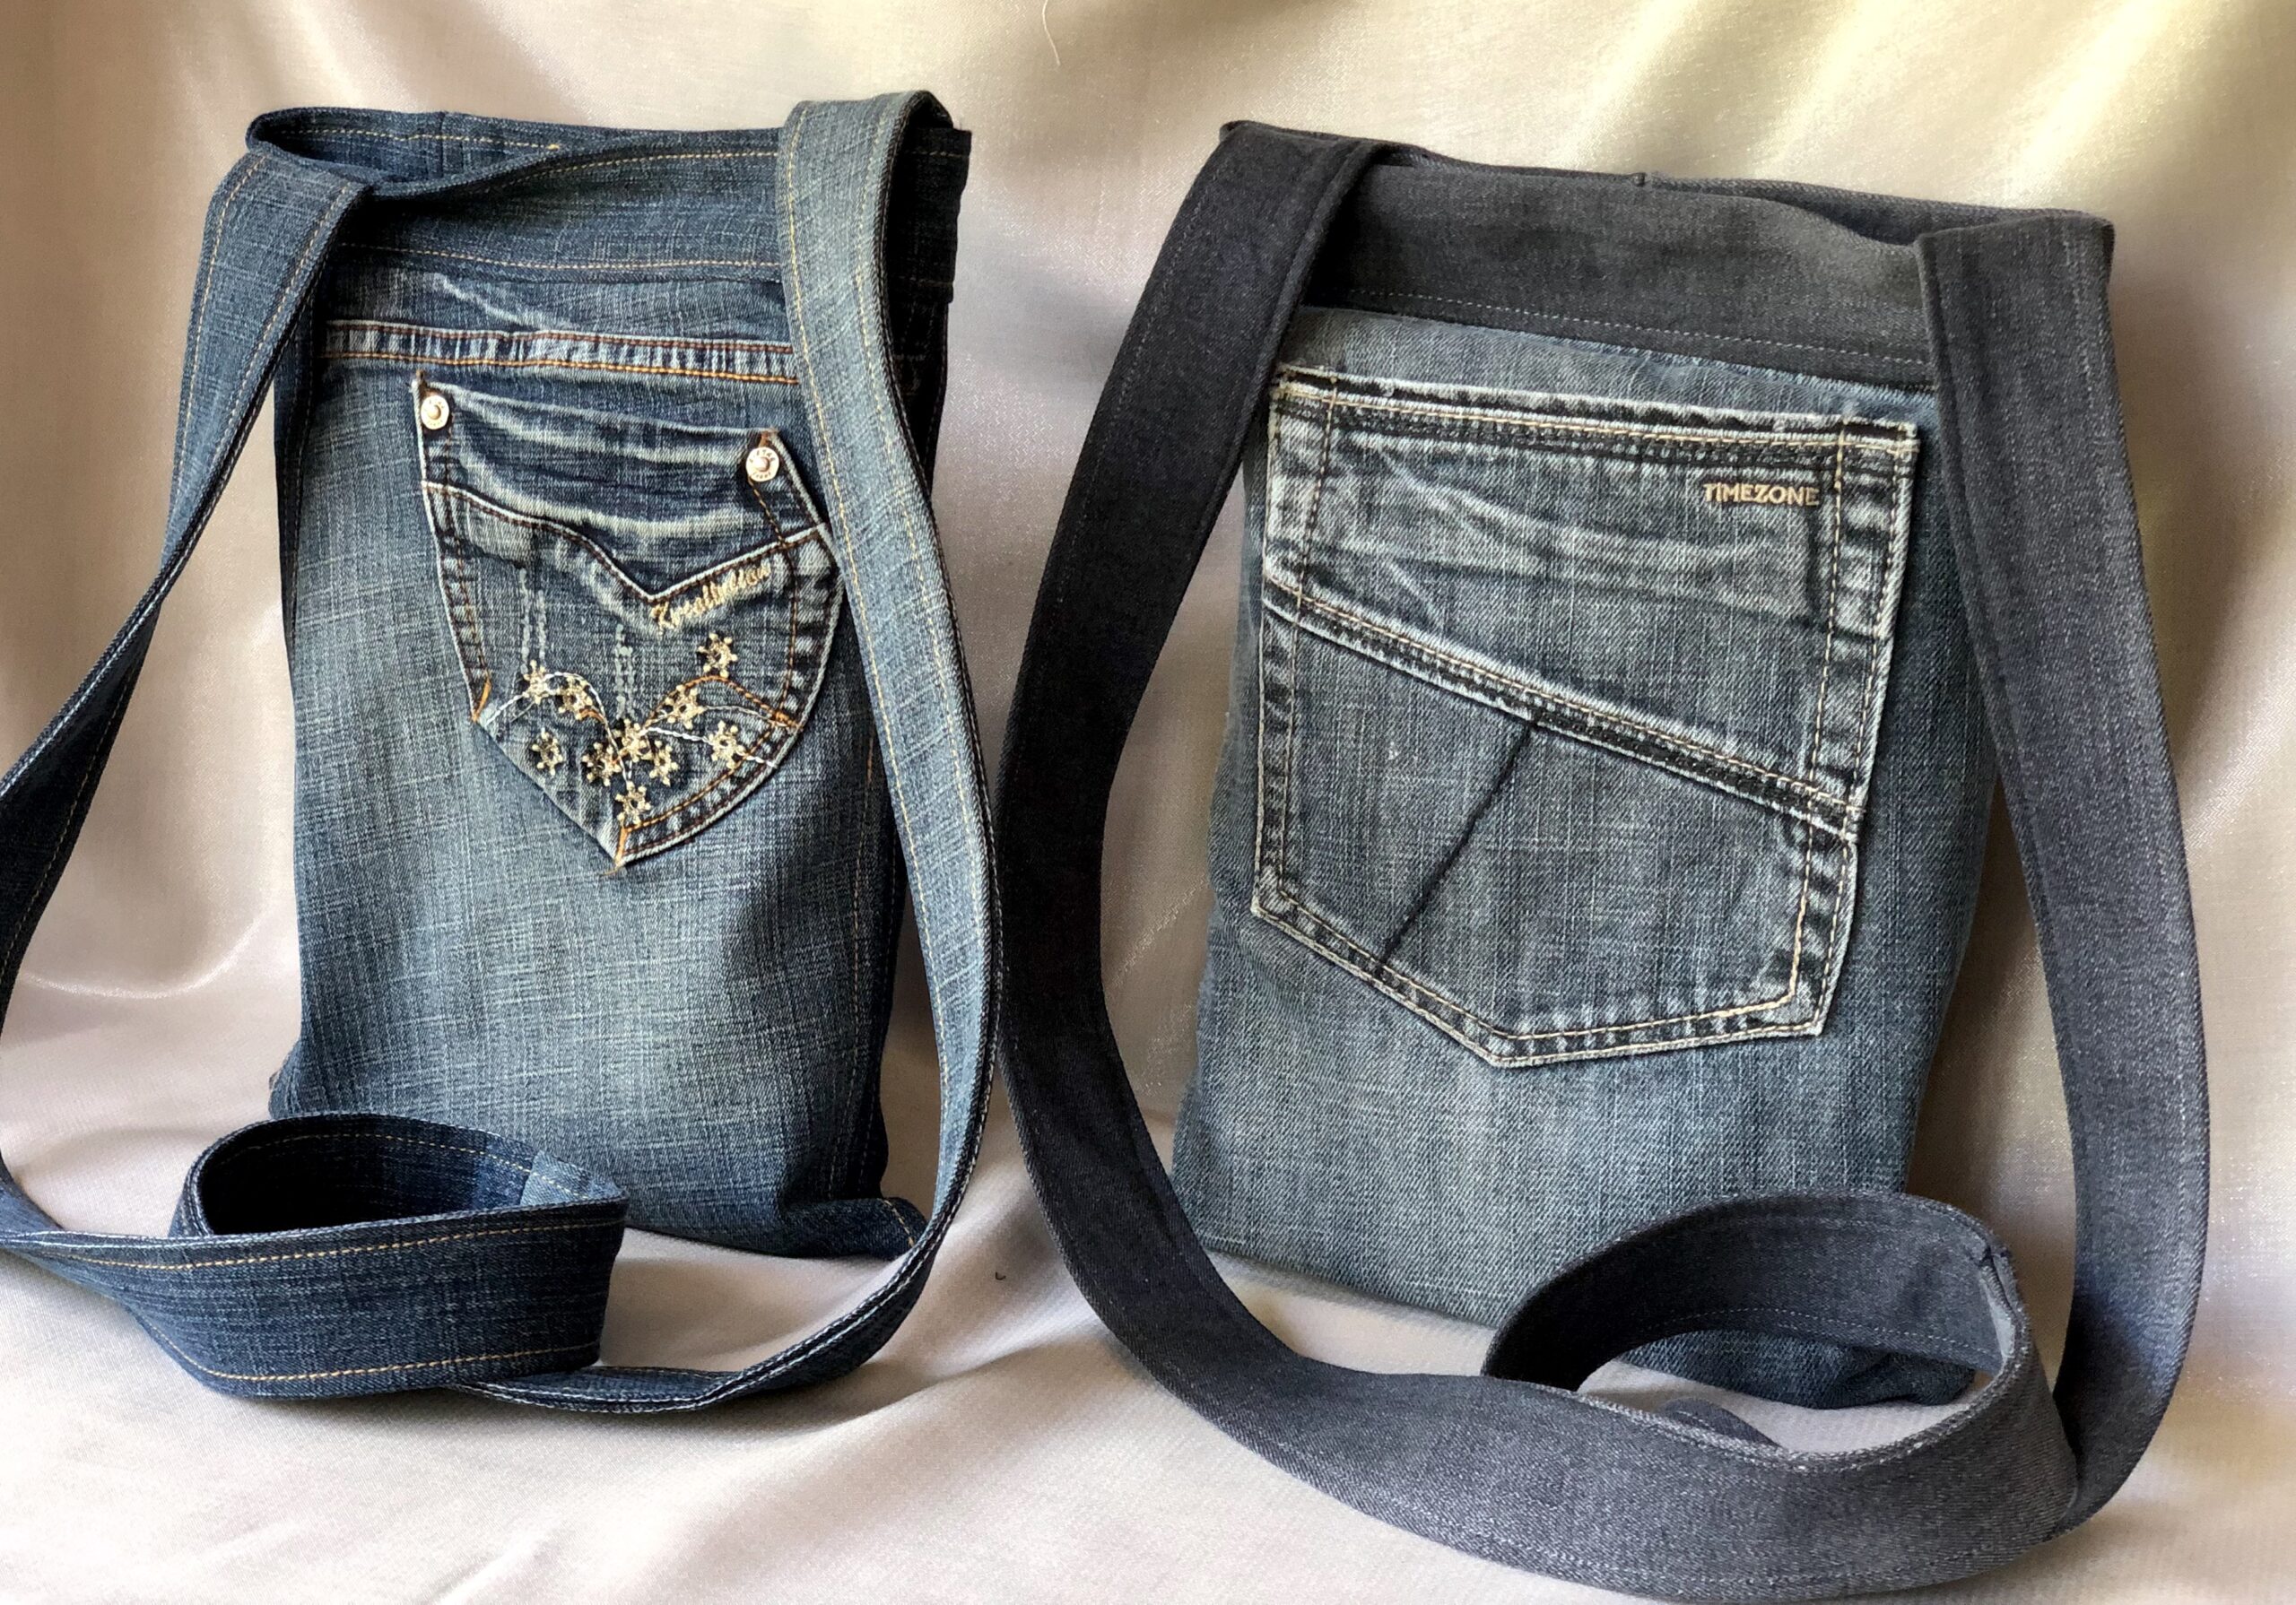 Jeans-Tasche - Produkt entwickelt von Beata Sievi